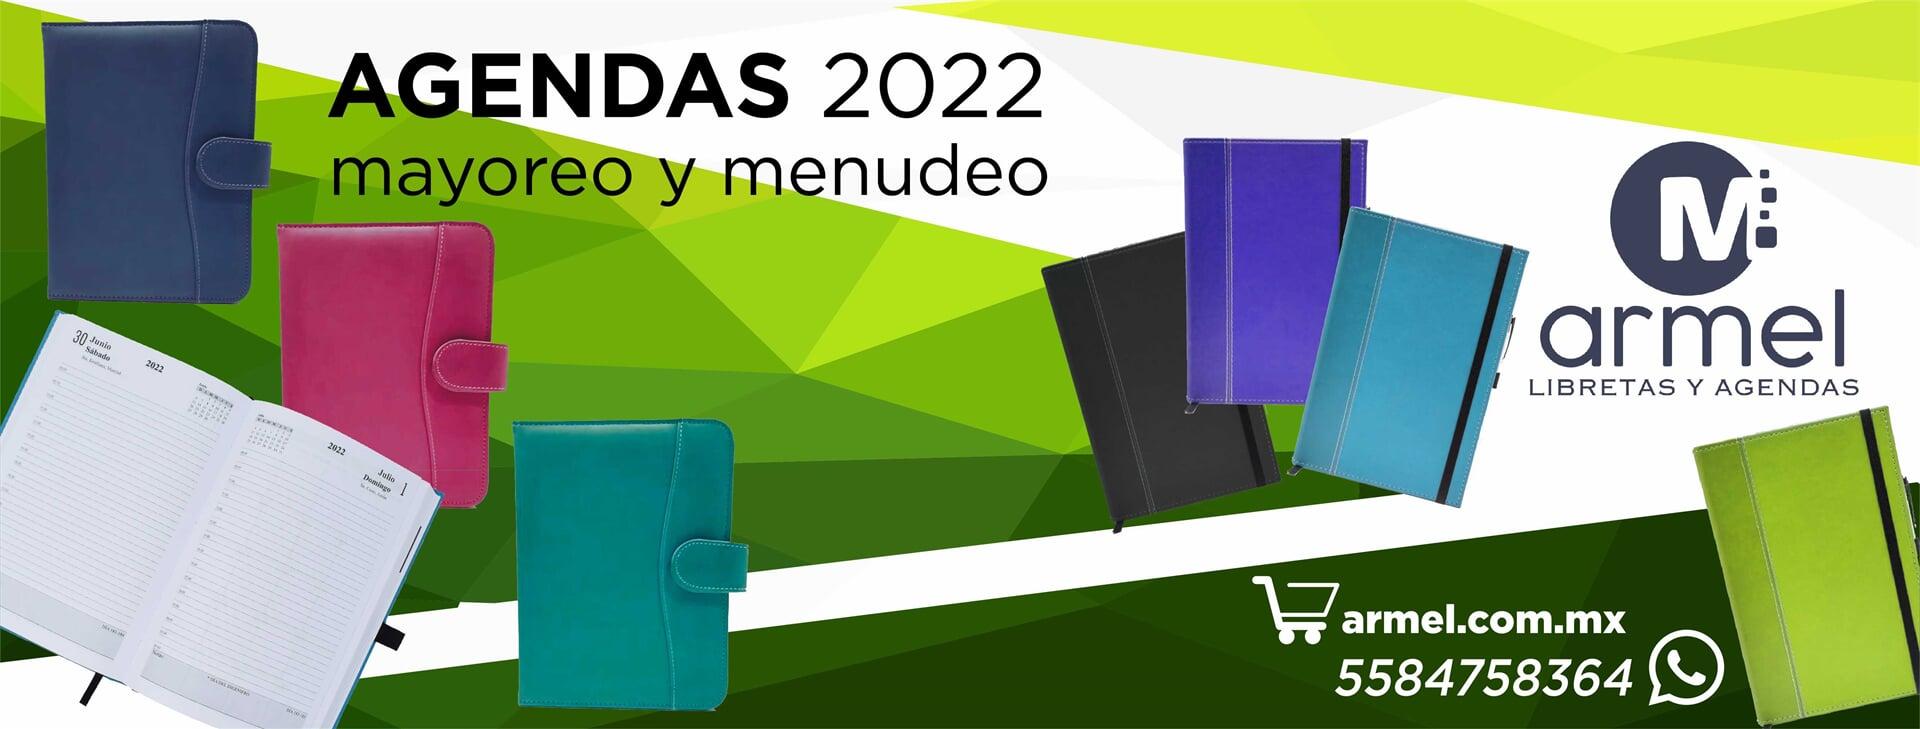 ARMEL AGENDAS Y LIBRETAS - Agendas 2022